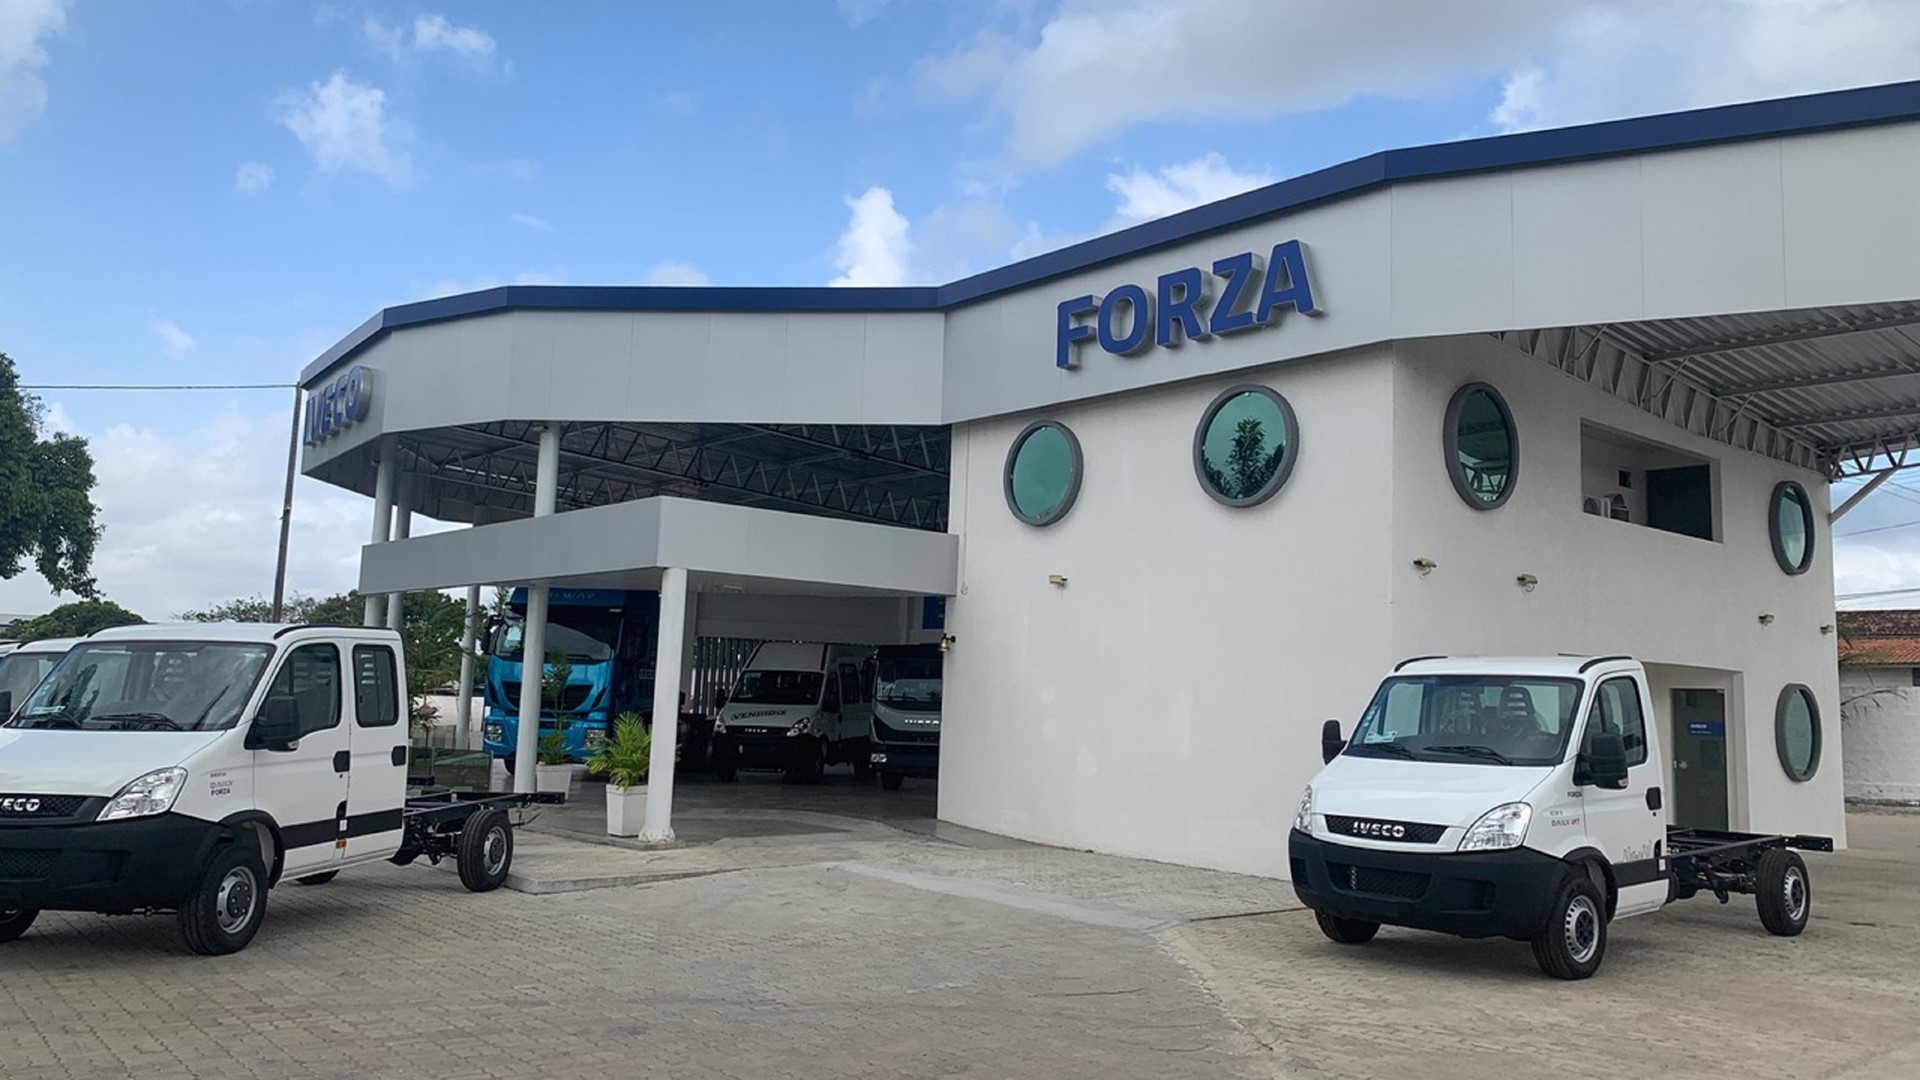 IVECO inaugura concessionária Forza no Ceará